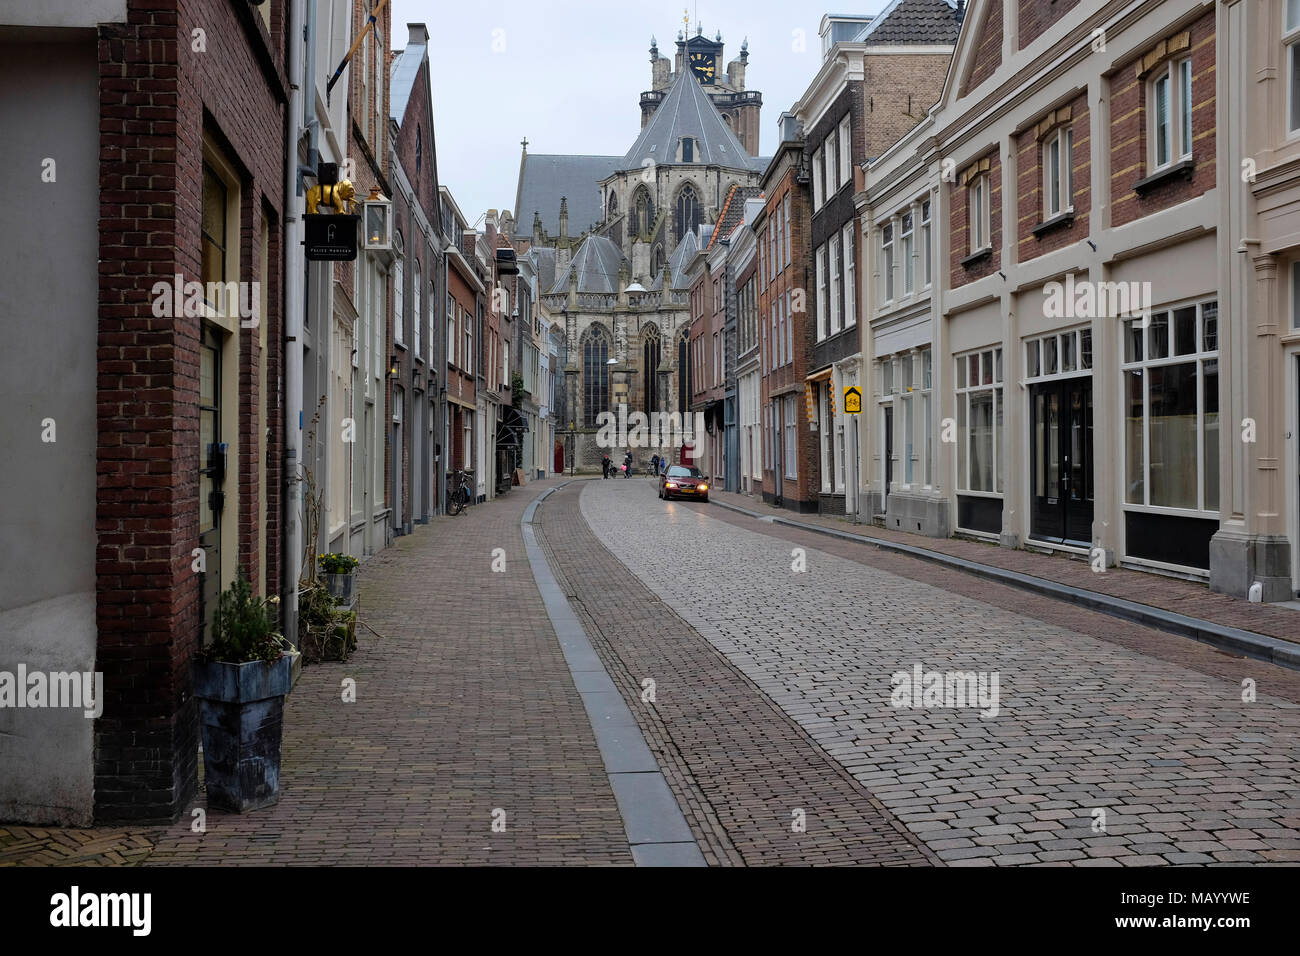 Vieux canal maisons de Dordrecht, Pays-Bas Banque D'Images